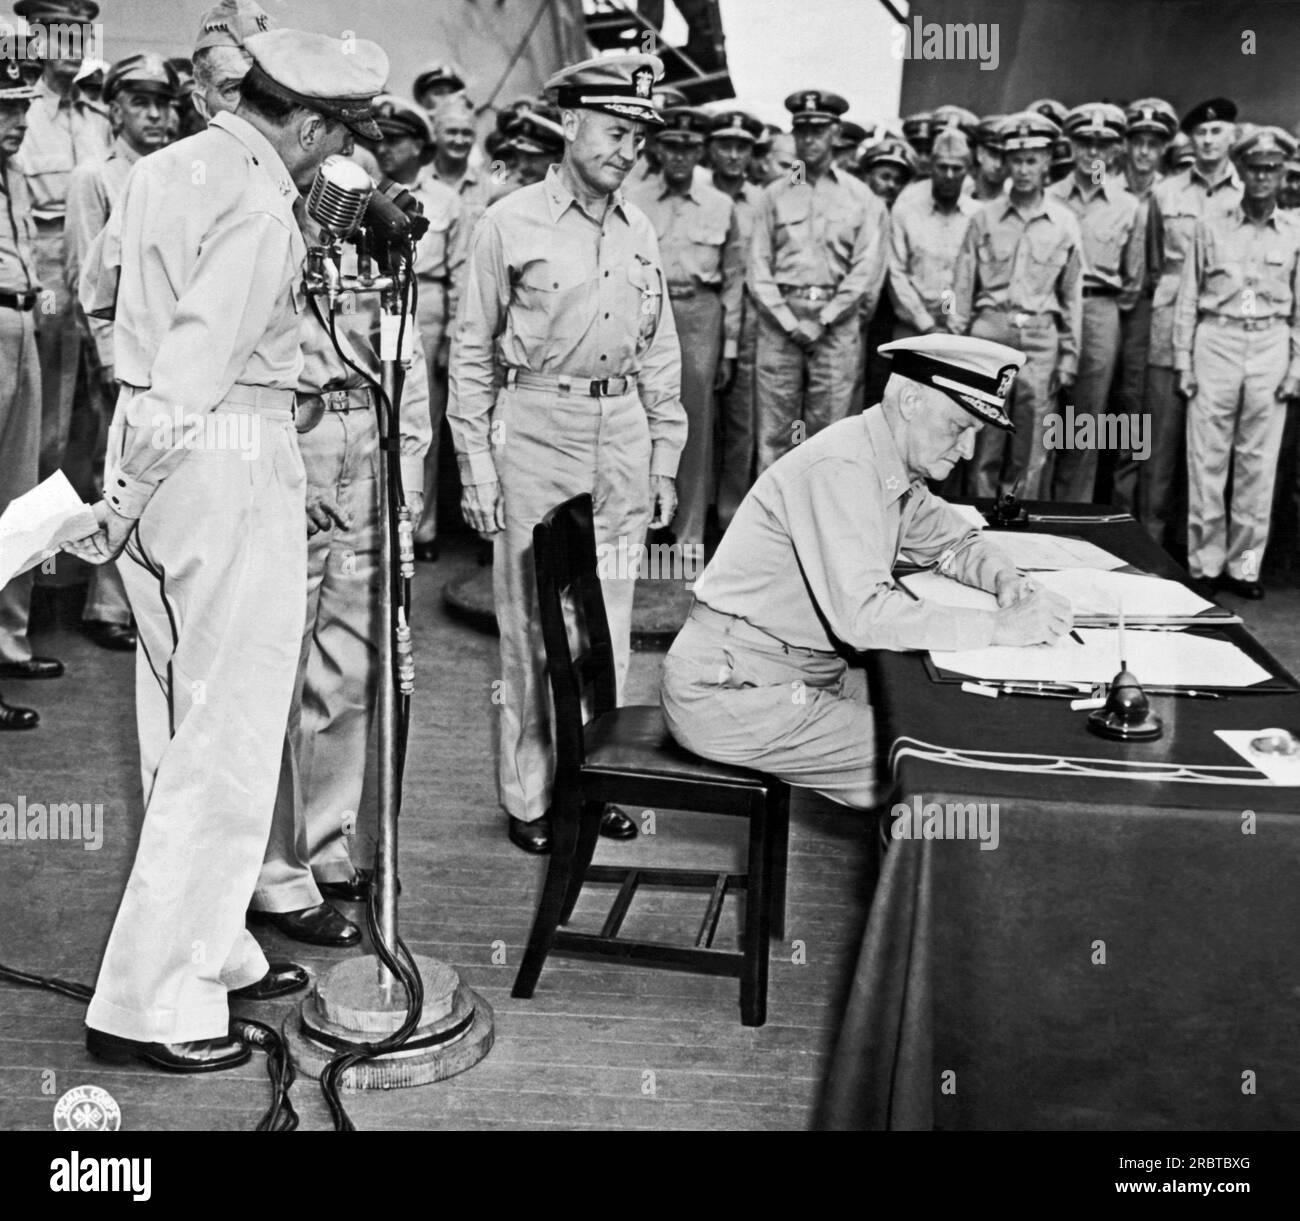 Tokio, Japan: 1. September 1945 Flottenadmiral Chester Nimitz signiert während der japanischen Kapitulationszeremonie an Bord der USS Missouri in der Bucht von Tokio für die Vereinigten Staaten. General der Armee Douglas MacArthur steht links am Mikrofon. Stockfoto